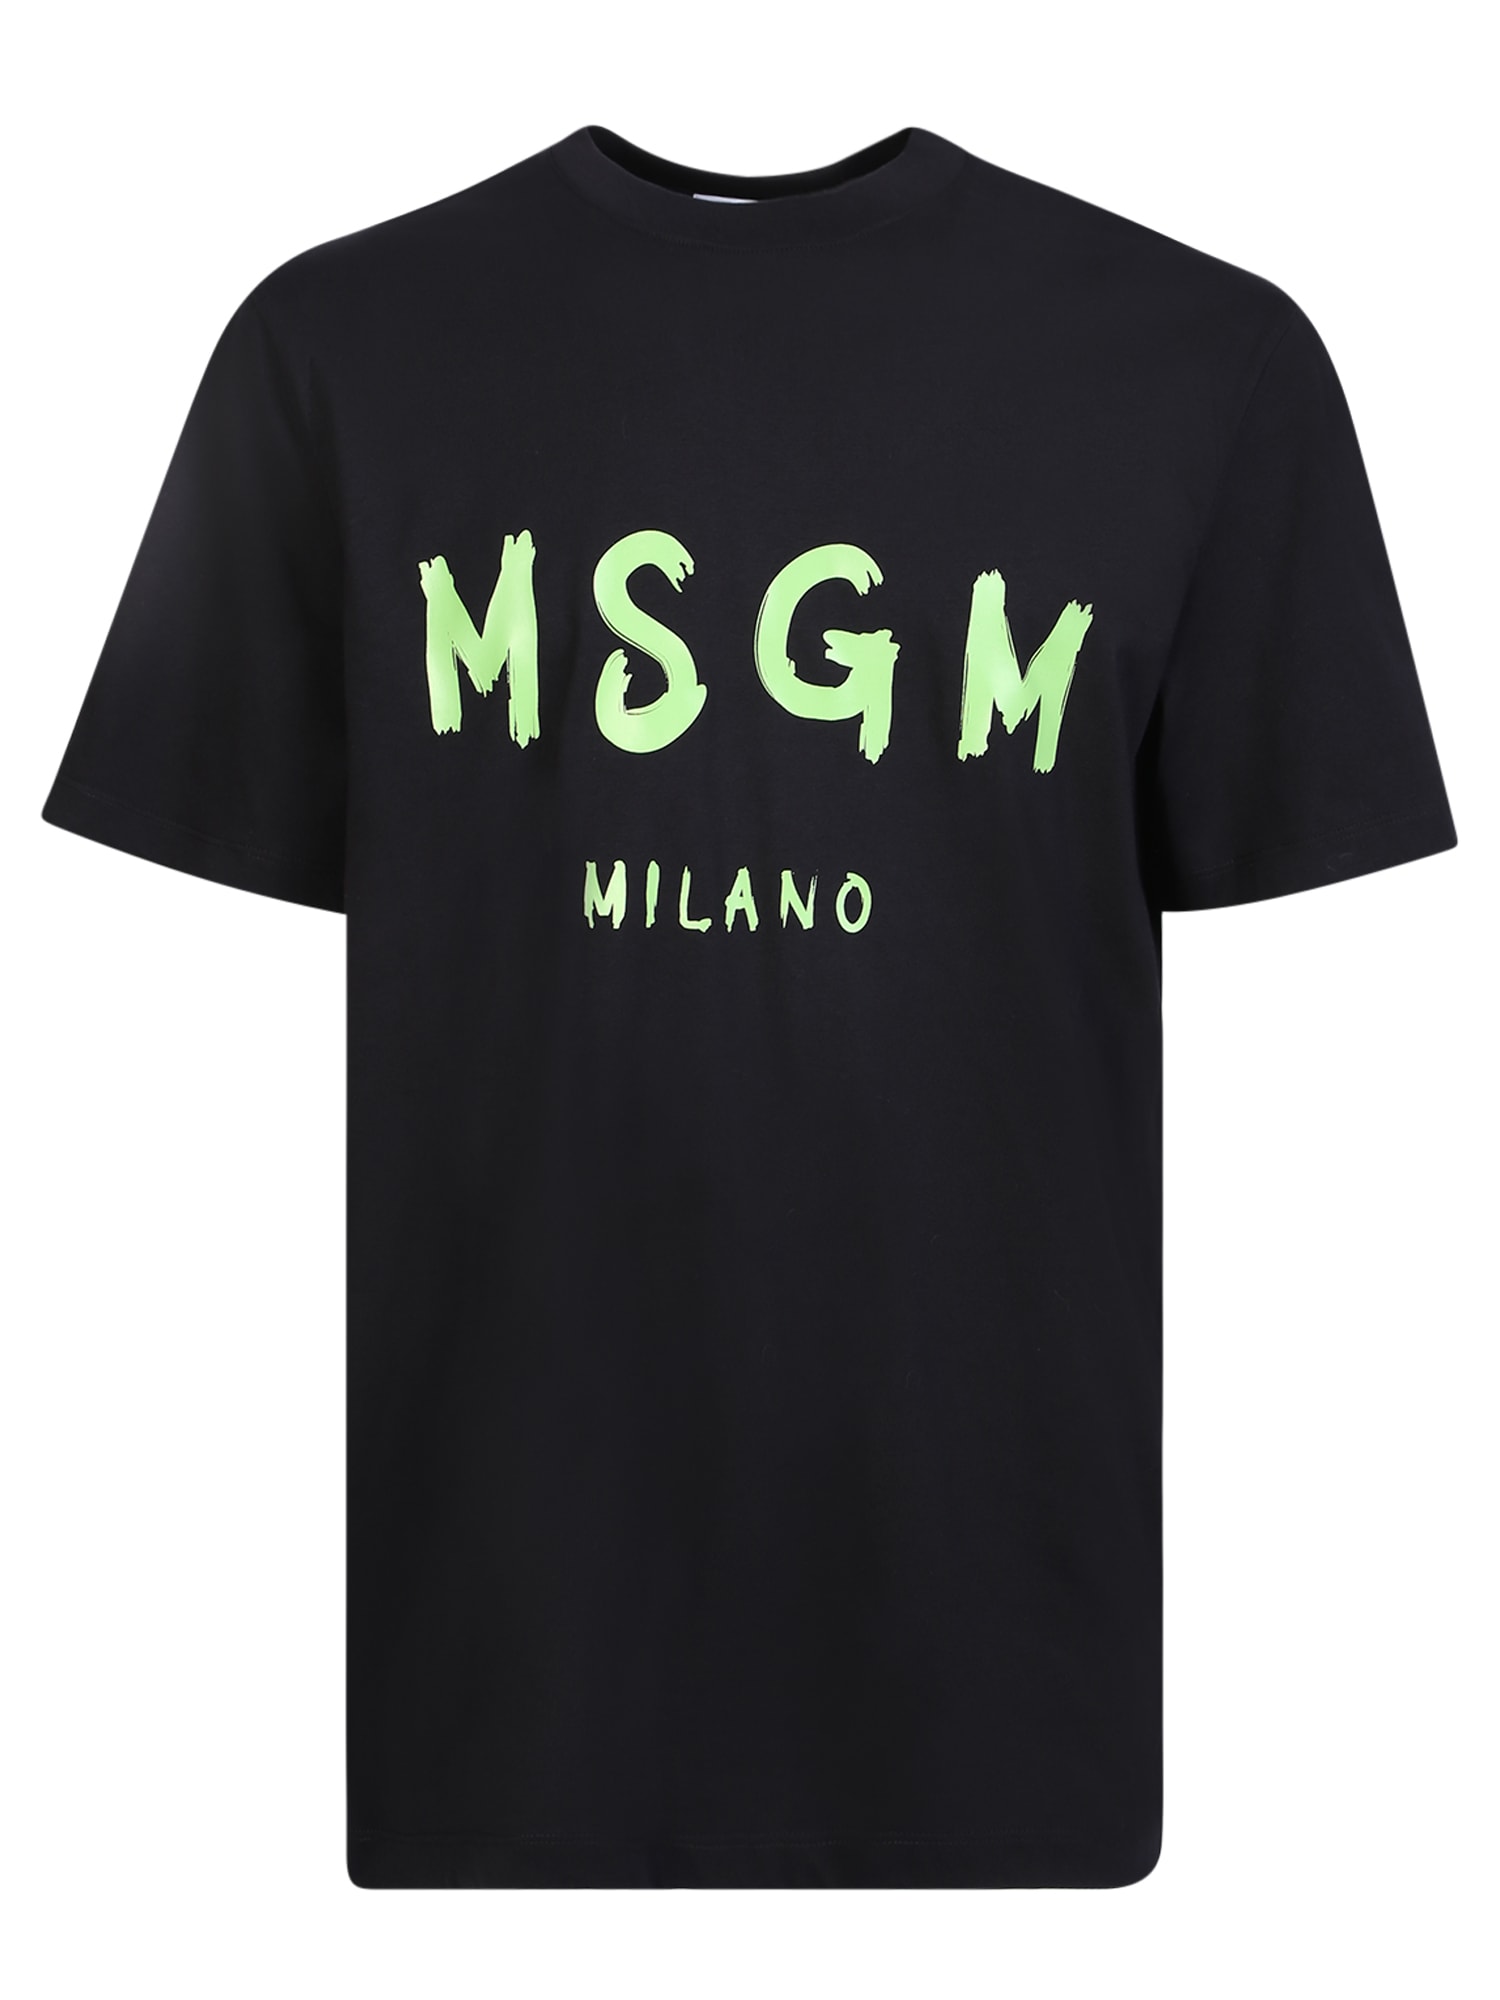 MSGM Logo Black And Green T-shirt